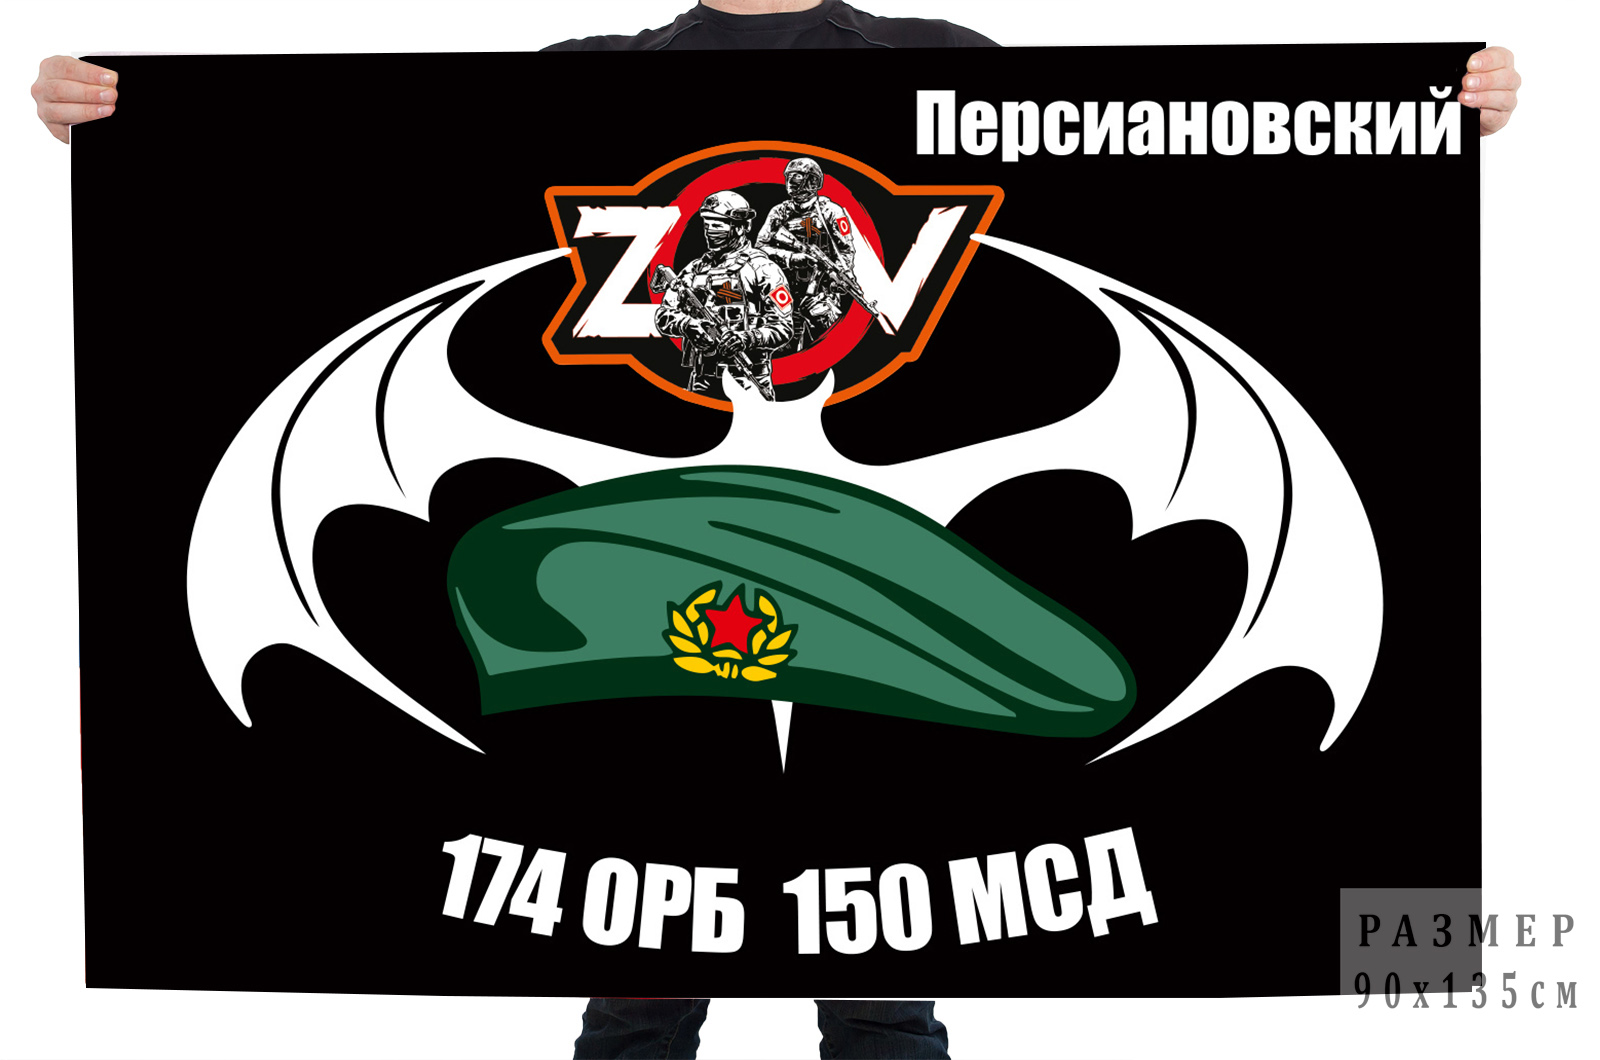 Флаг 174 ОРБ 150 МСД "Спецоперация Z-V"